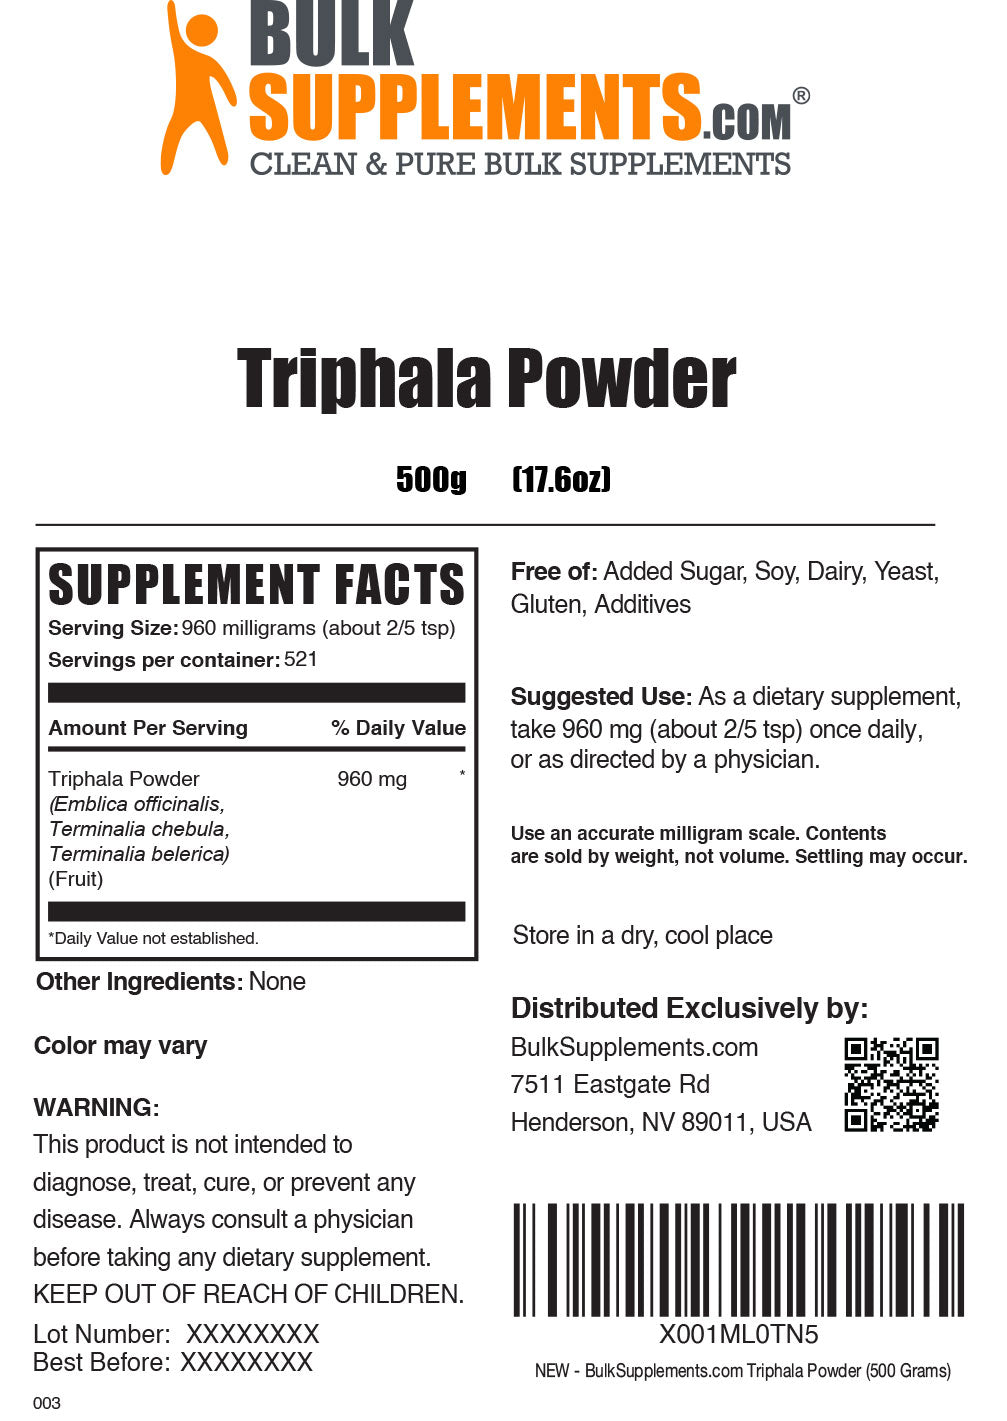 Triphala Powder Label 500g